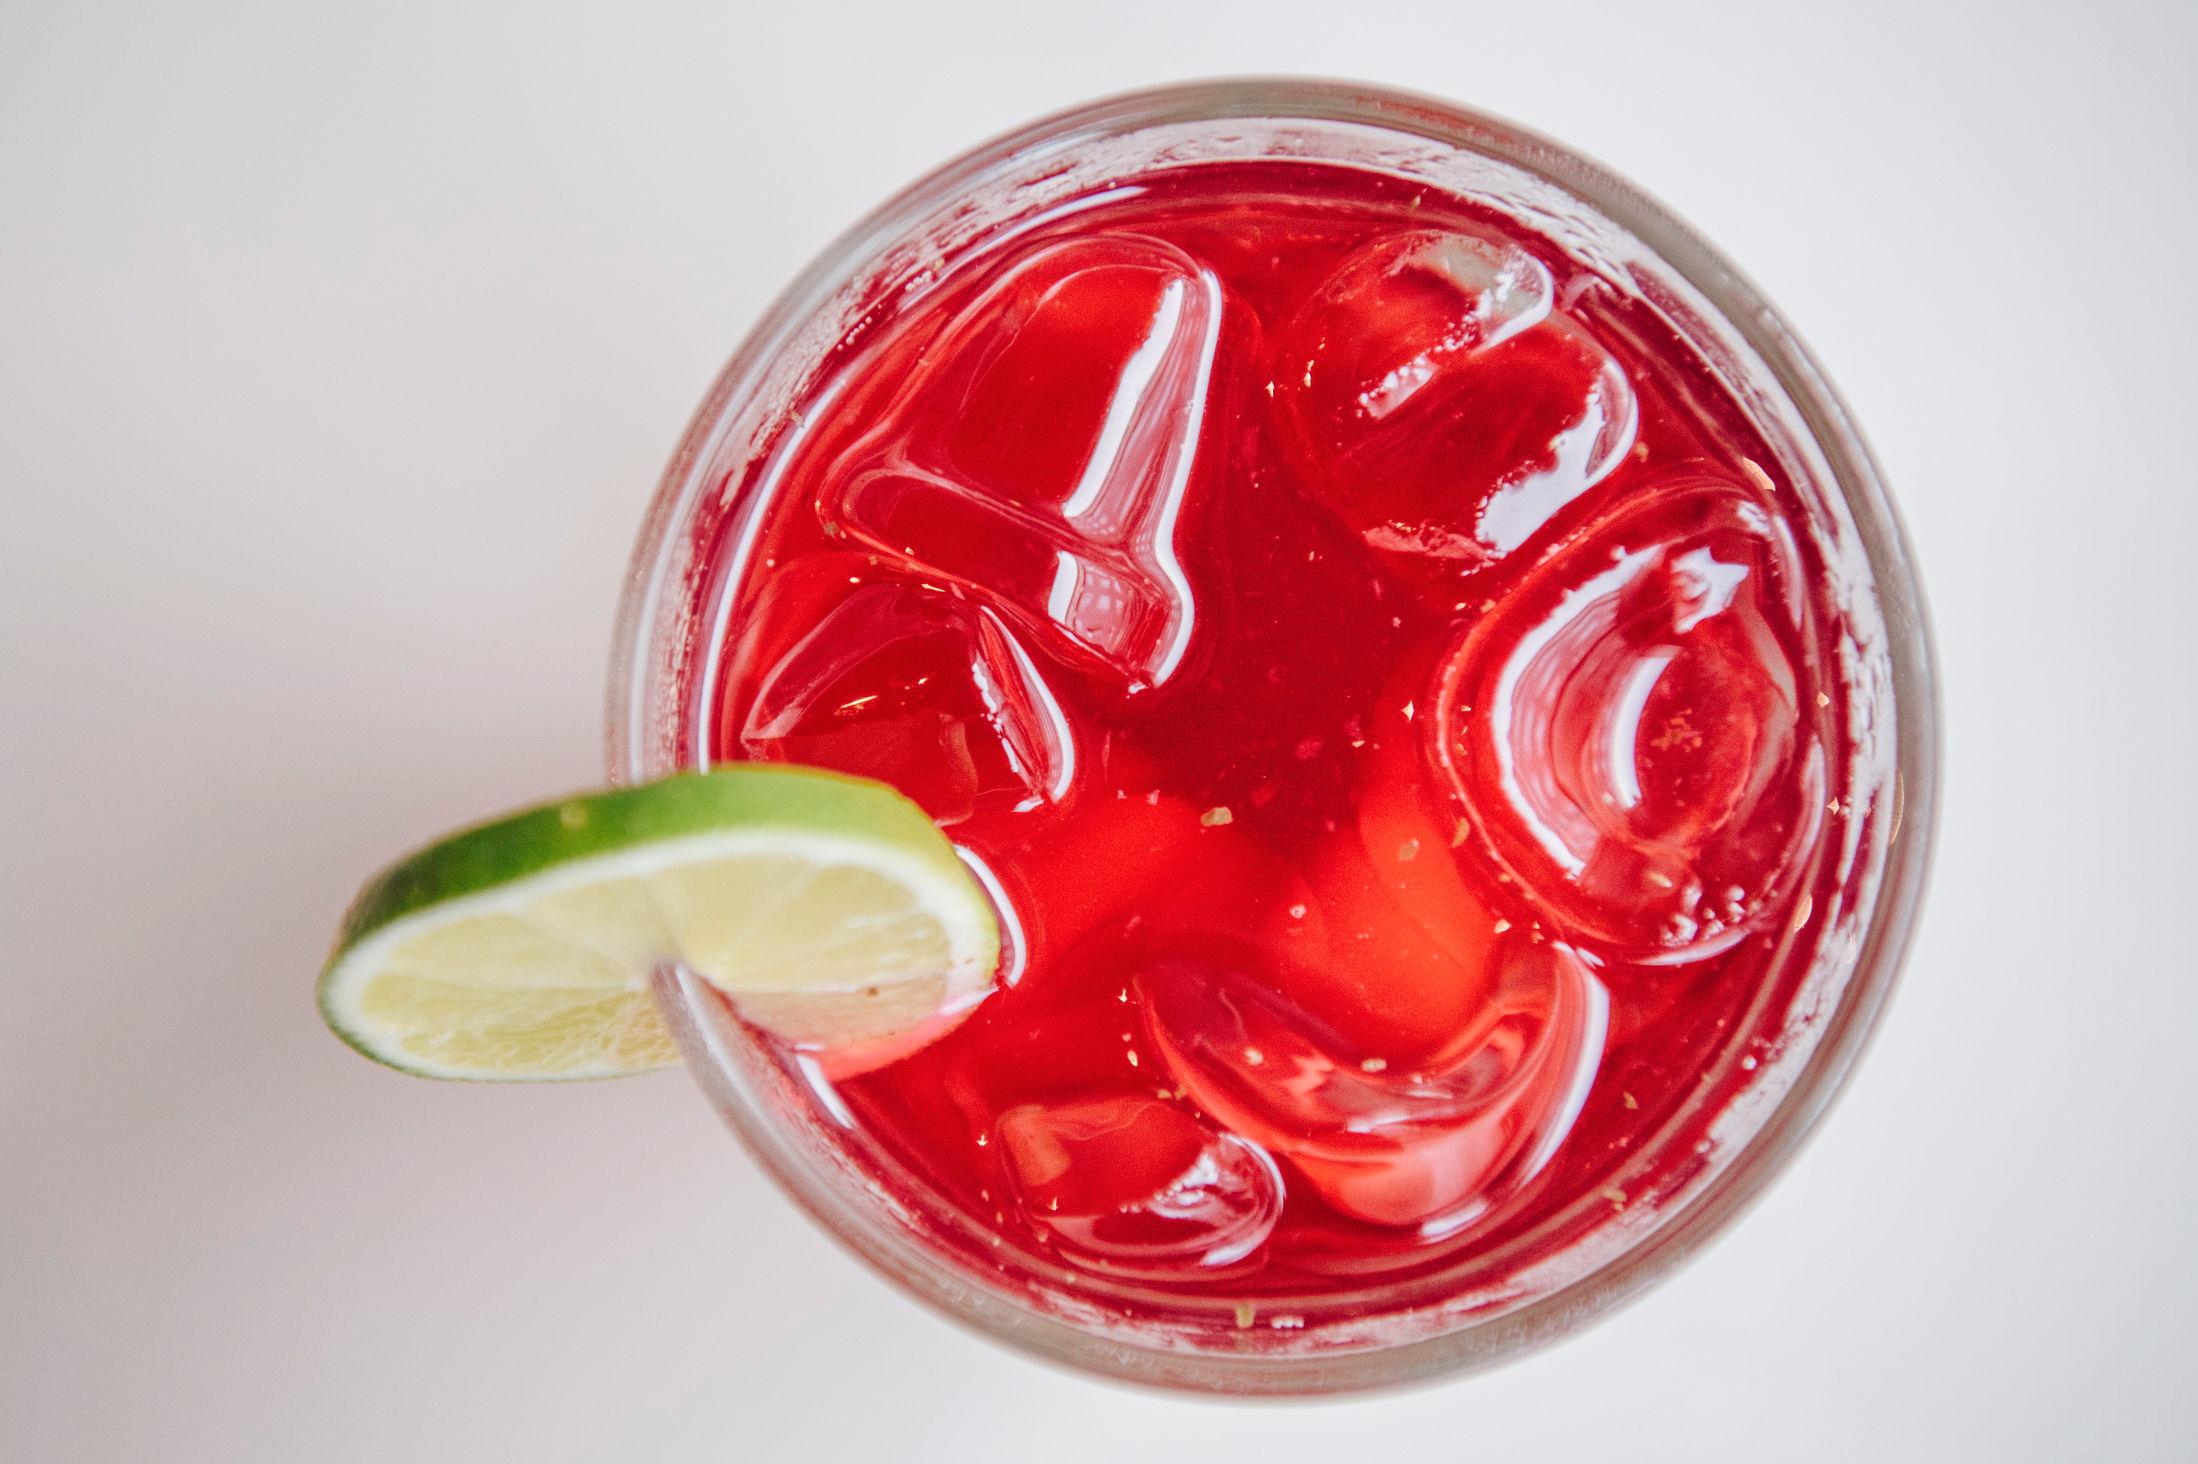 SØT: Anmelderen smakte på en alkoholfri Jamaica, en søtlig drikk med hibiskus. Foto: Ola Vatn/VG